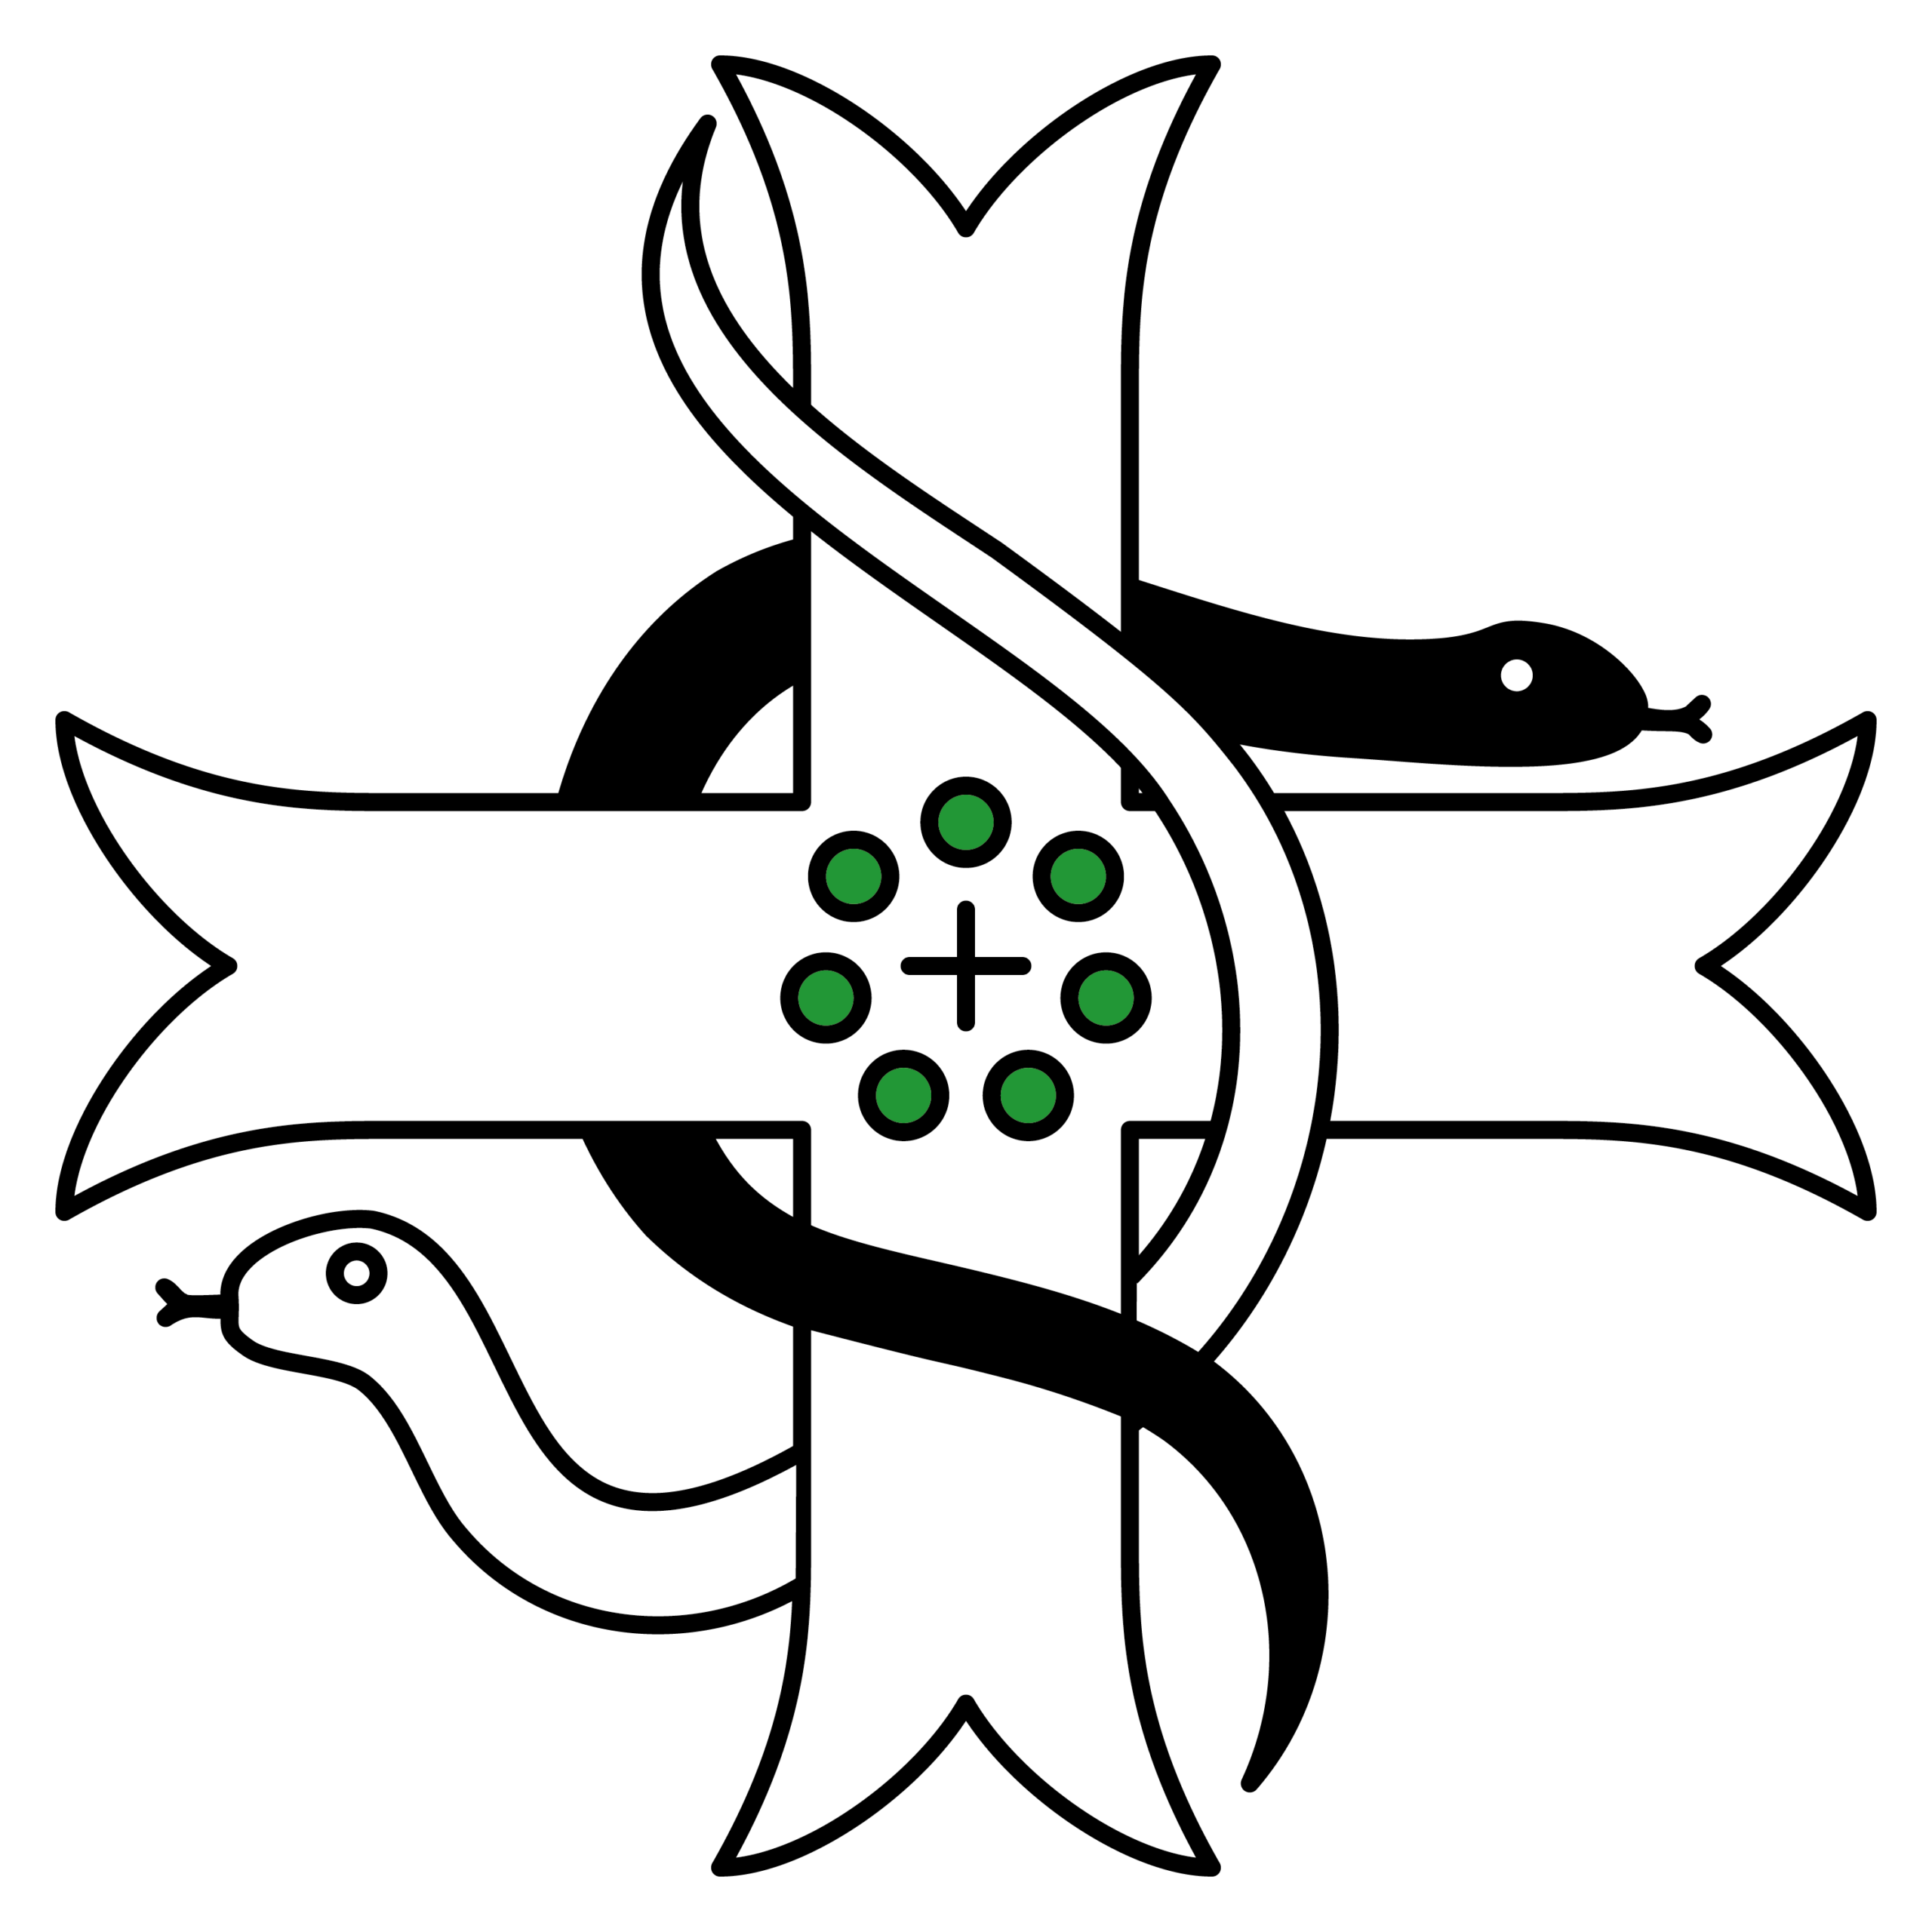 Logo des Michaelicums: Ein großes, weisses Kreuz, das von einer weissen und einer schwarzen Schlange umwunden wird. In der Mitte 7 grüne Rosen kreisförmig um ein kleines schwarzes Kreuz angeordnet.